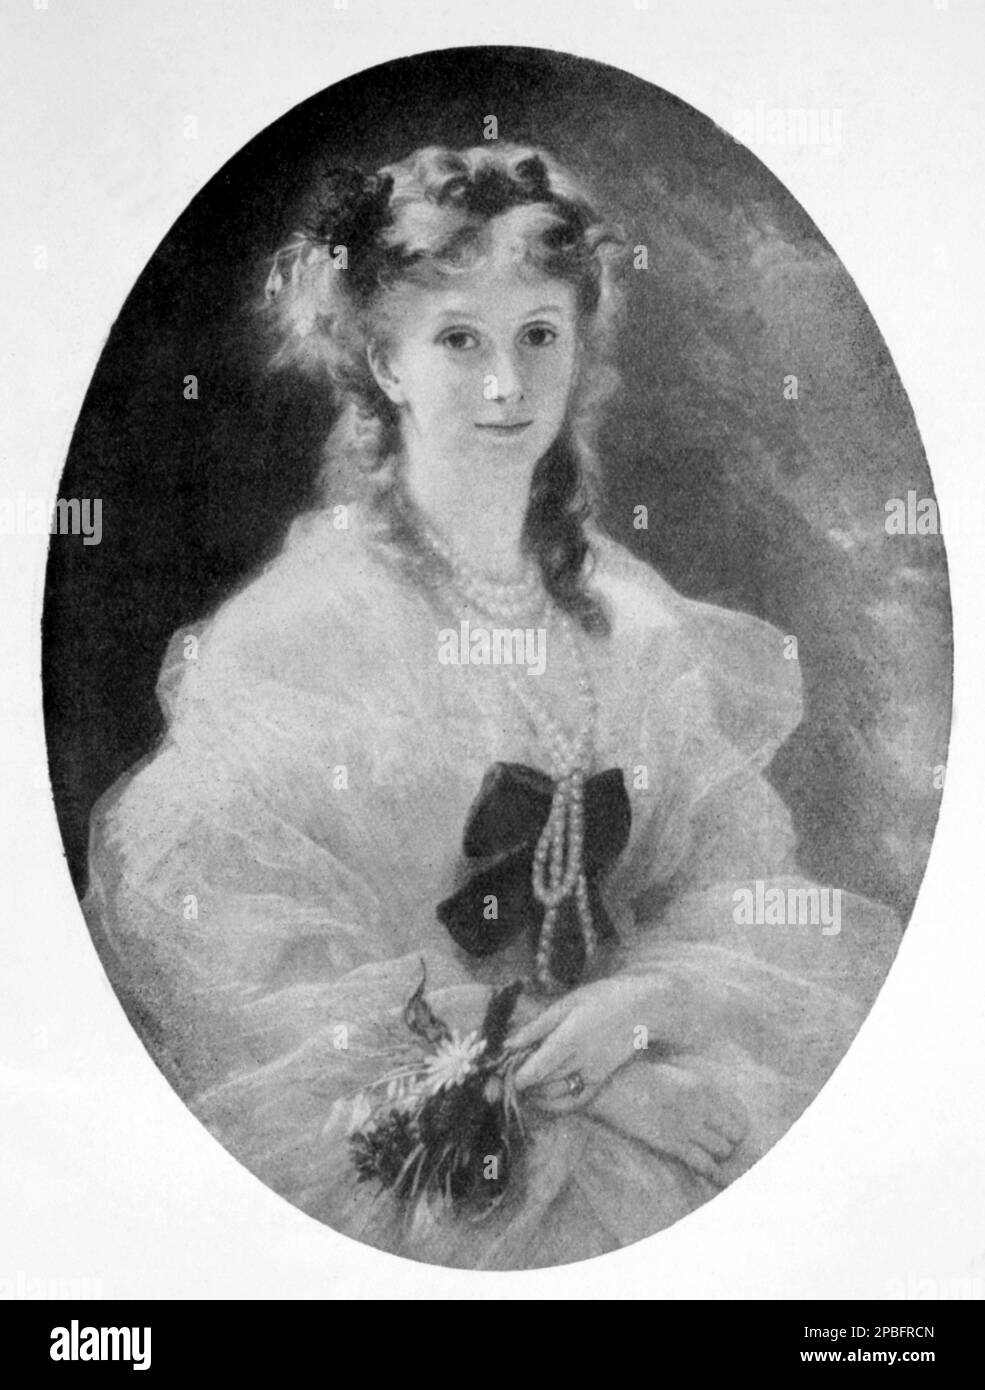 1857 ca : la Duchesse DE MORNY , nata princesse Sophie Troubetzkoi ( 1838 -1896 ), figlia naturale dello Zar di Russia Nicola I. Fu la Regina di Parigi durante il secondo Impero da Napoleone III Bonaparte . Sposato con il duca Carlo Auguste Luigi Giuseppe Demorny (1811 - 1865) , politico e fratellastro dell'imperatore Napoleone III . Ritratto del pittore Franz Xaver Winterhalter ( 1805- 1873 ) - FRANCIA - NOBILTÀ - NOBILI - Nobiltà - FOTO STORICHE - FOTO STORICHE - collana perle - collana di perle - perla --- Archivio GBB Foto Stock